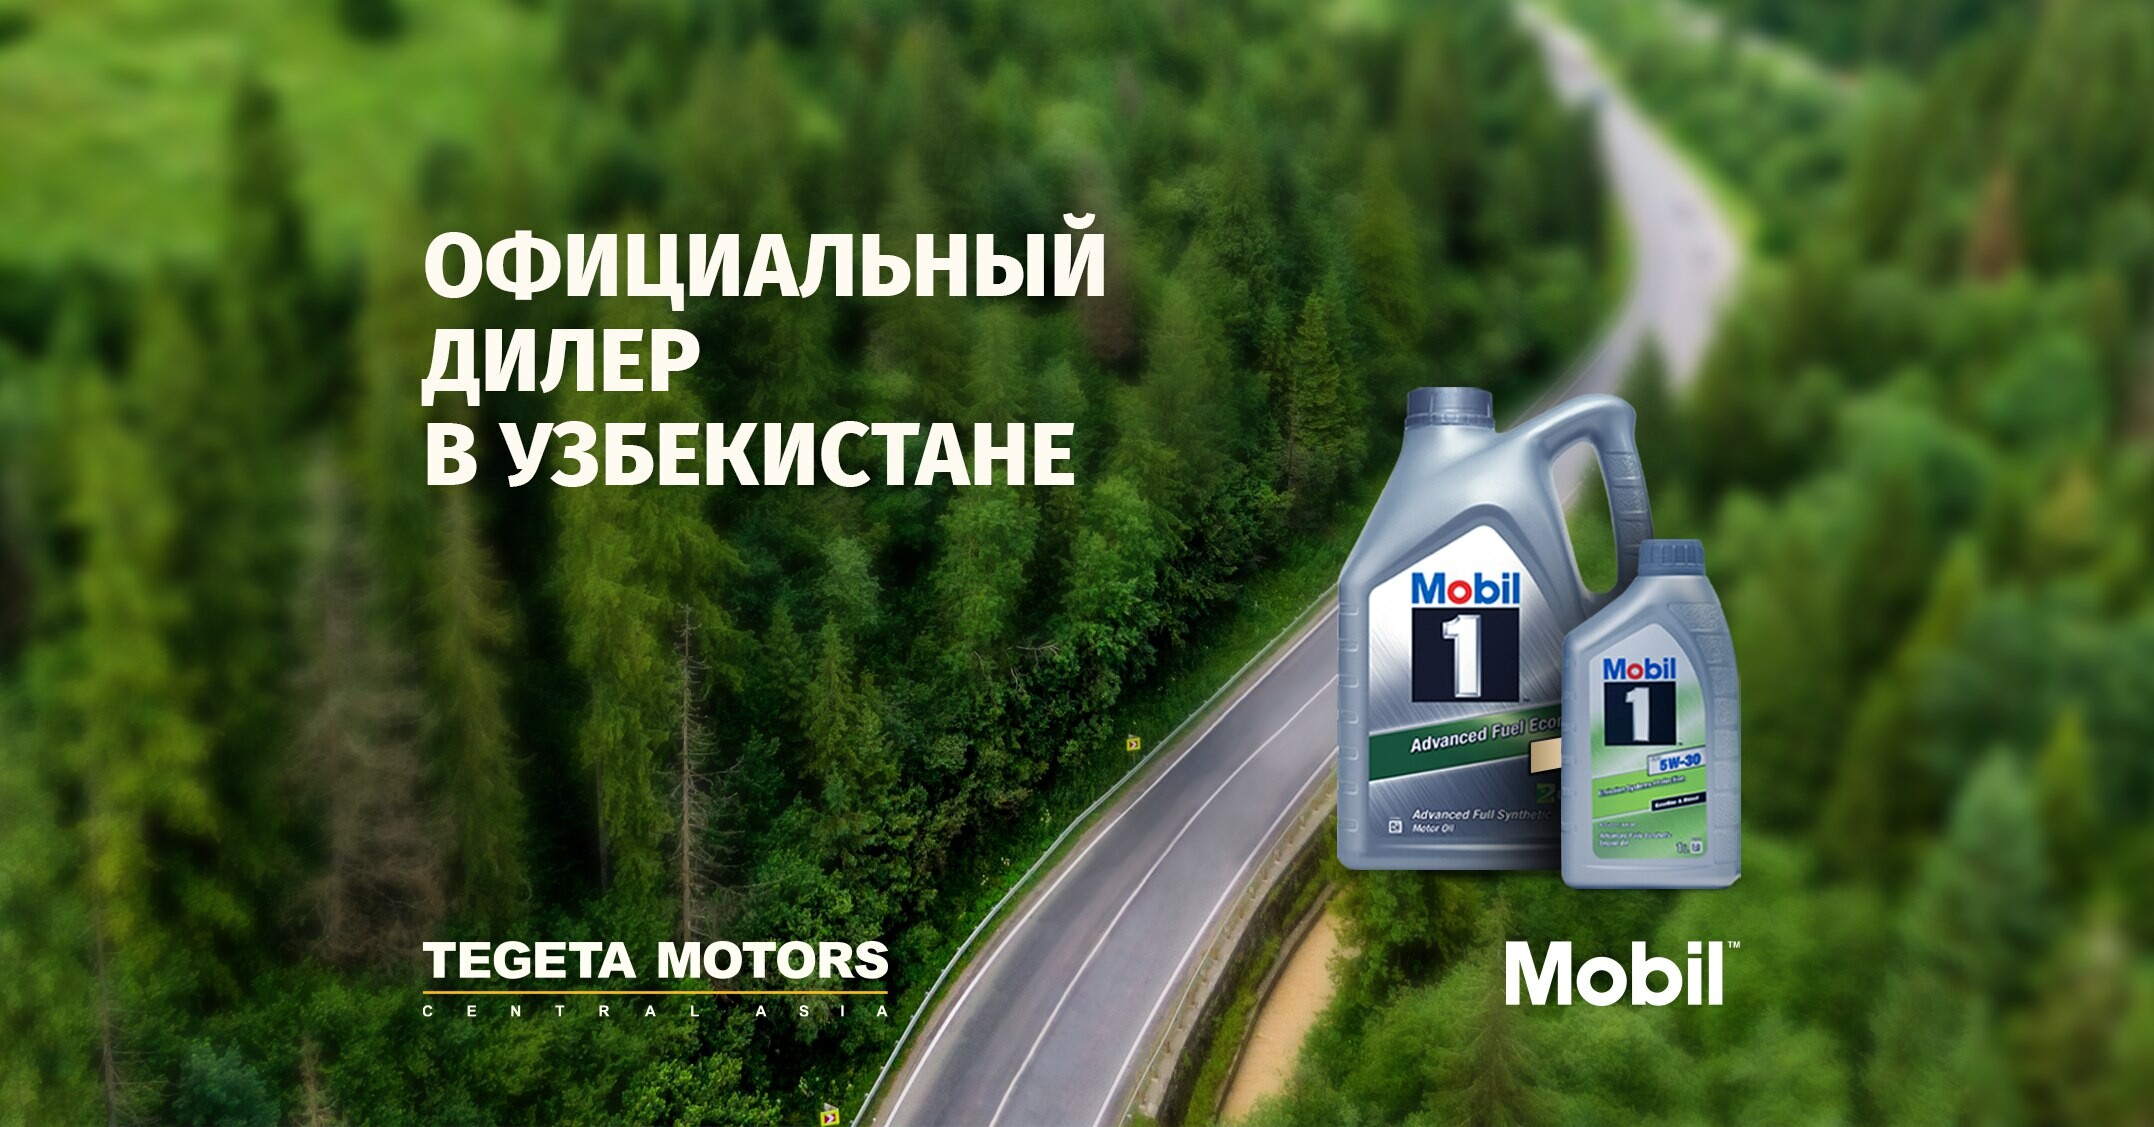 TEGETA Motors стала официальным дилером корпорации Mobil в Узбекистане